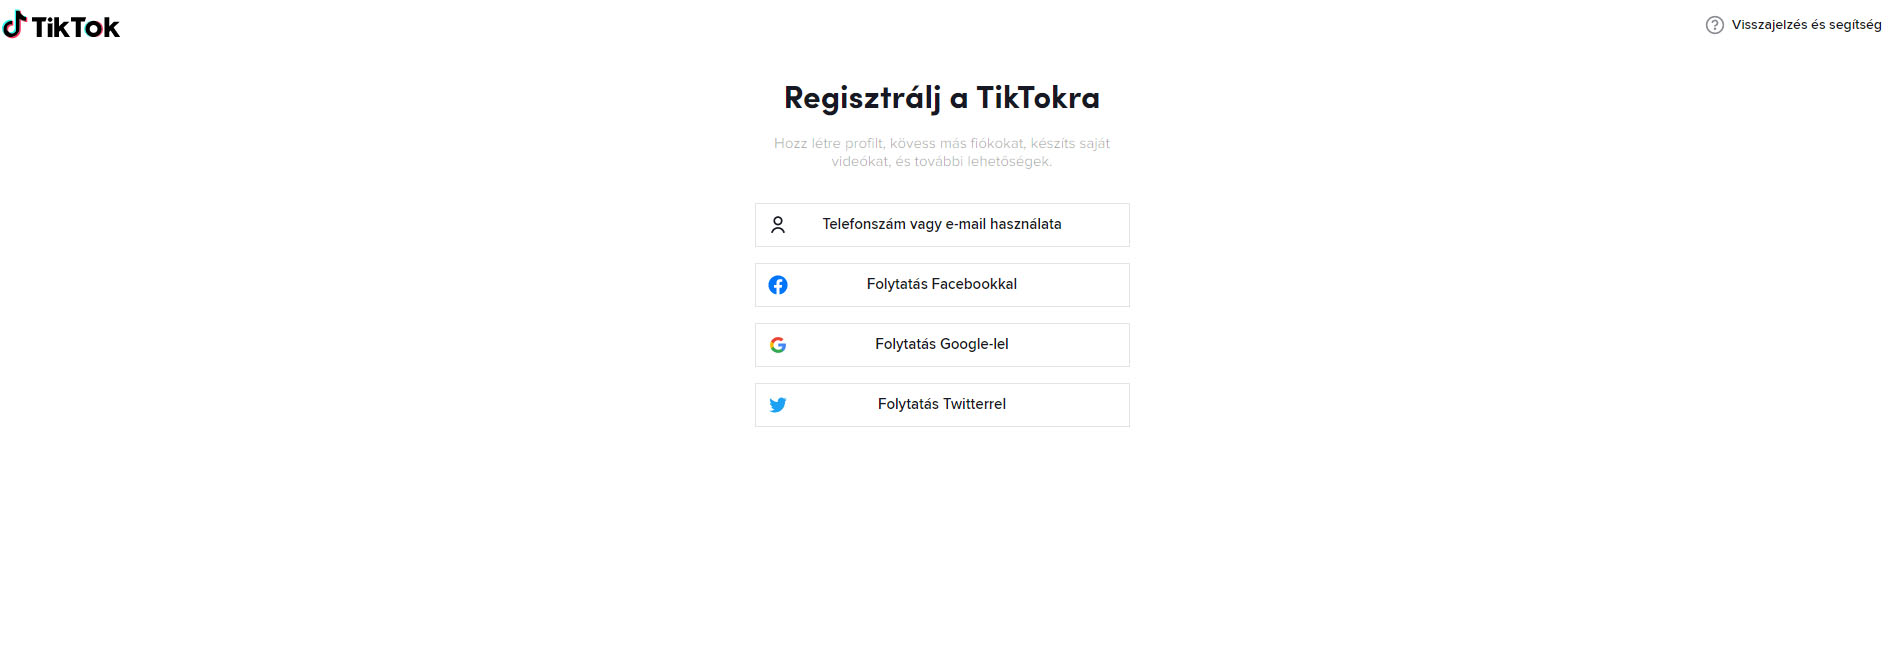 TikTok regisztráció mobil eszközön, asztali számítógépen